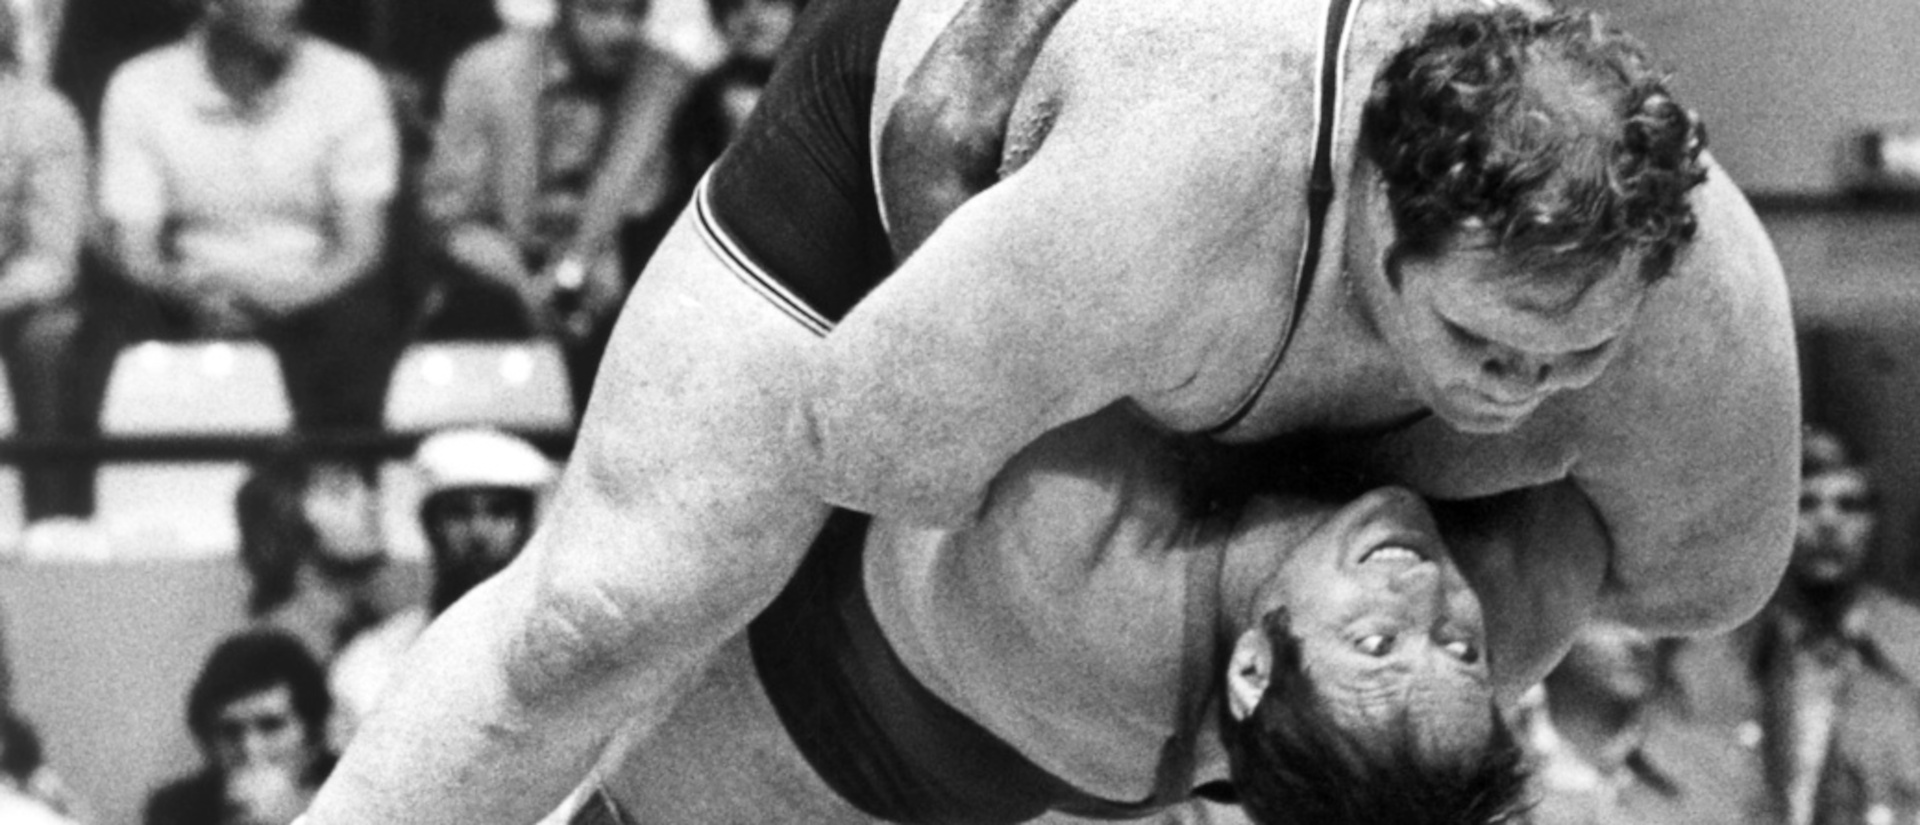 Ein besonderer olympischer Moment in München 1972: "David" alias Wilfried Dietrich besiegt "Goliath", den 200 Kilogramm  schweren US-Amerikaner Chris Taylor.